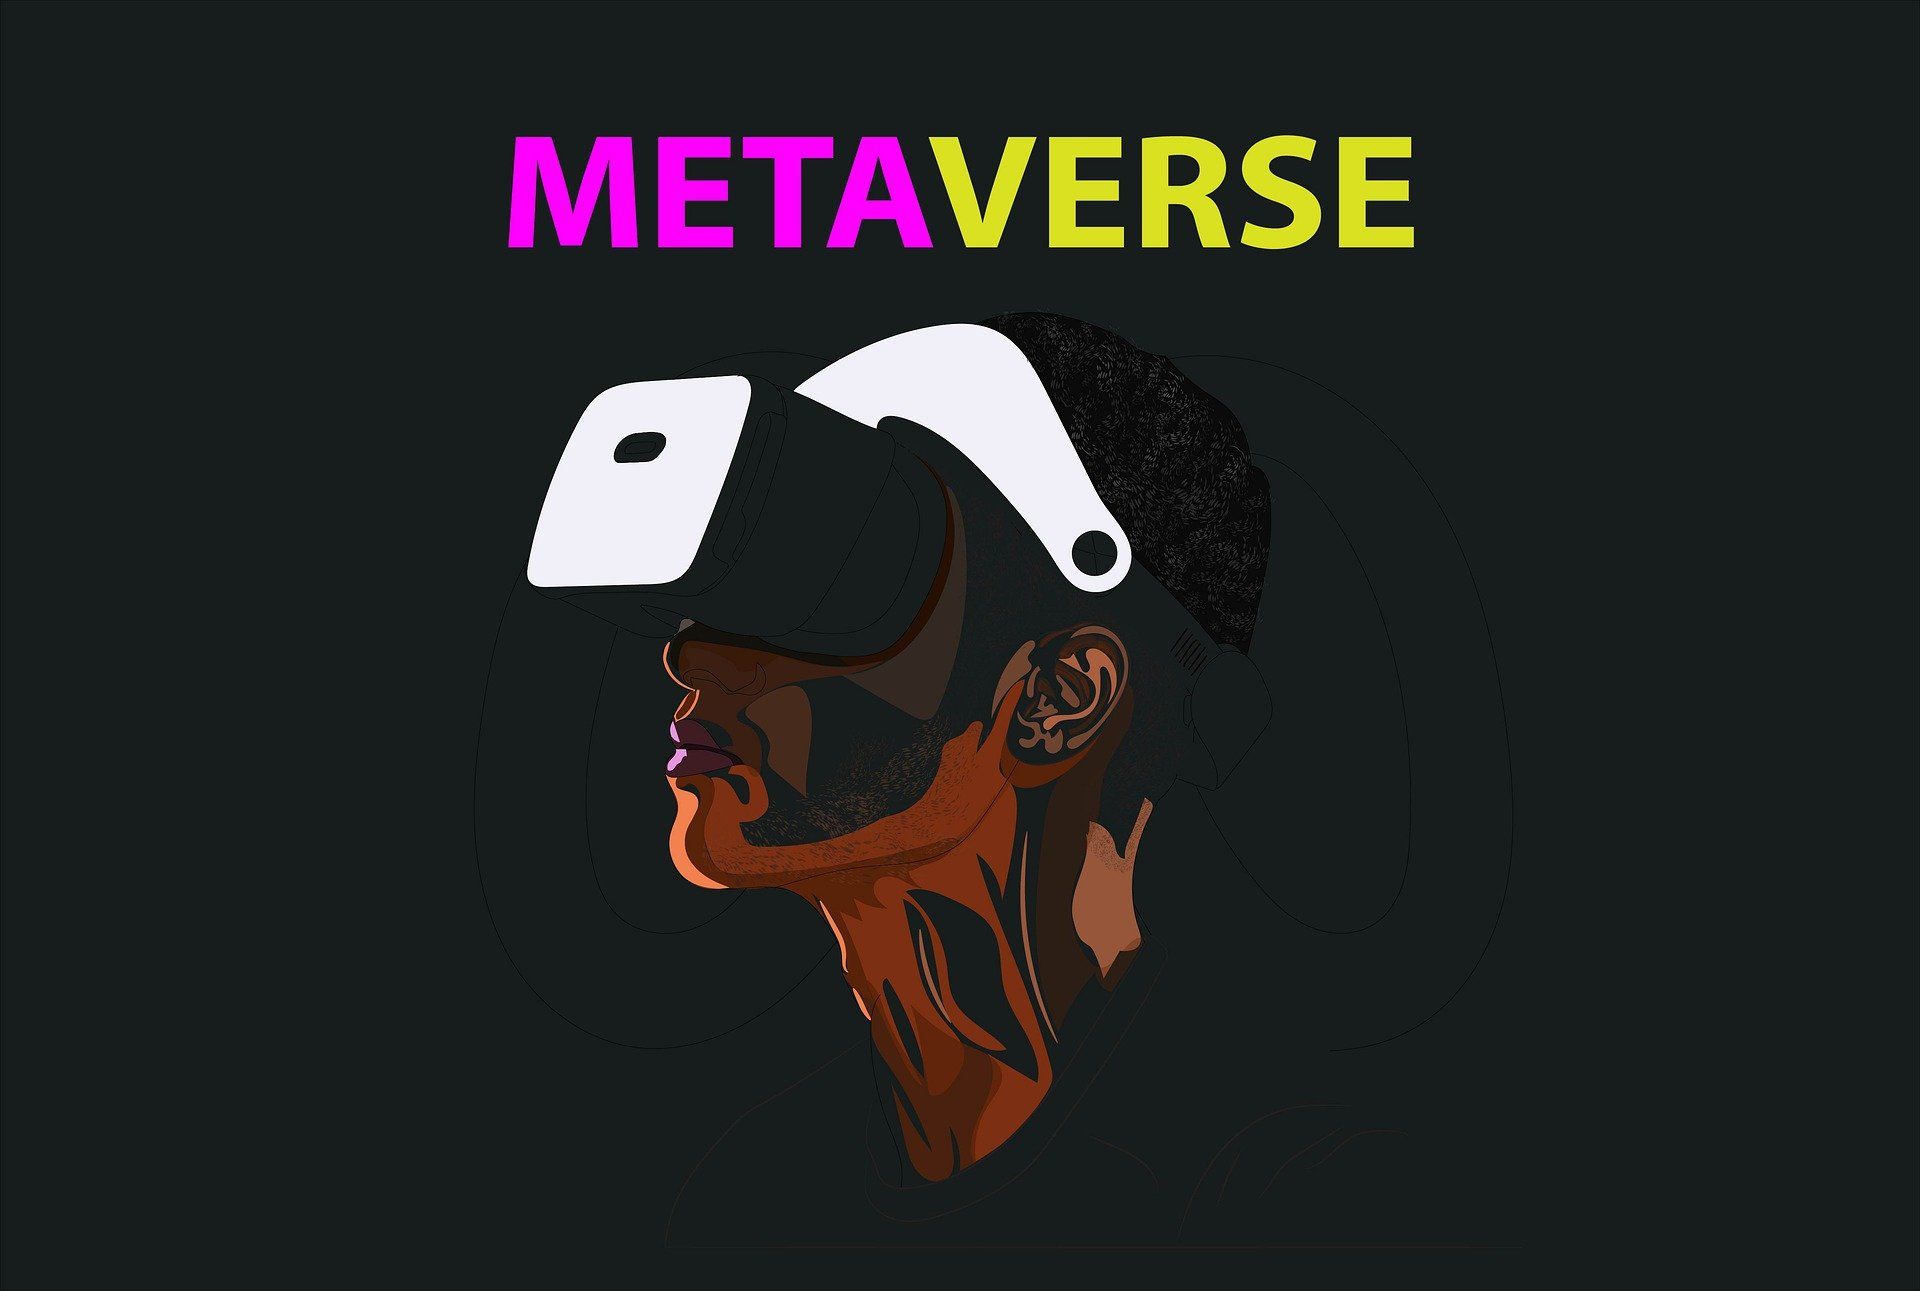 Metaverse Virtual Worlds: A melhor maneira de experimentar o Metaverse